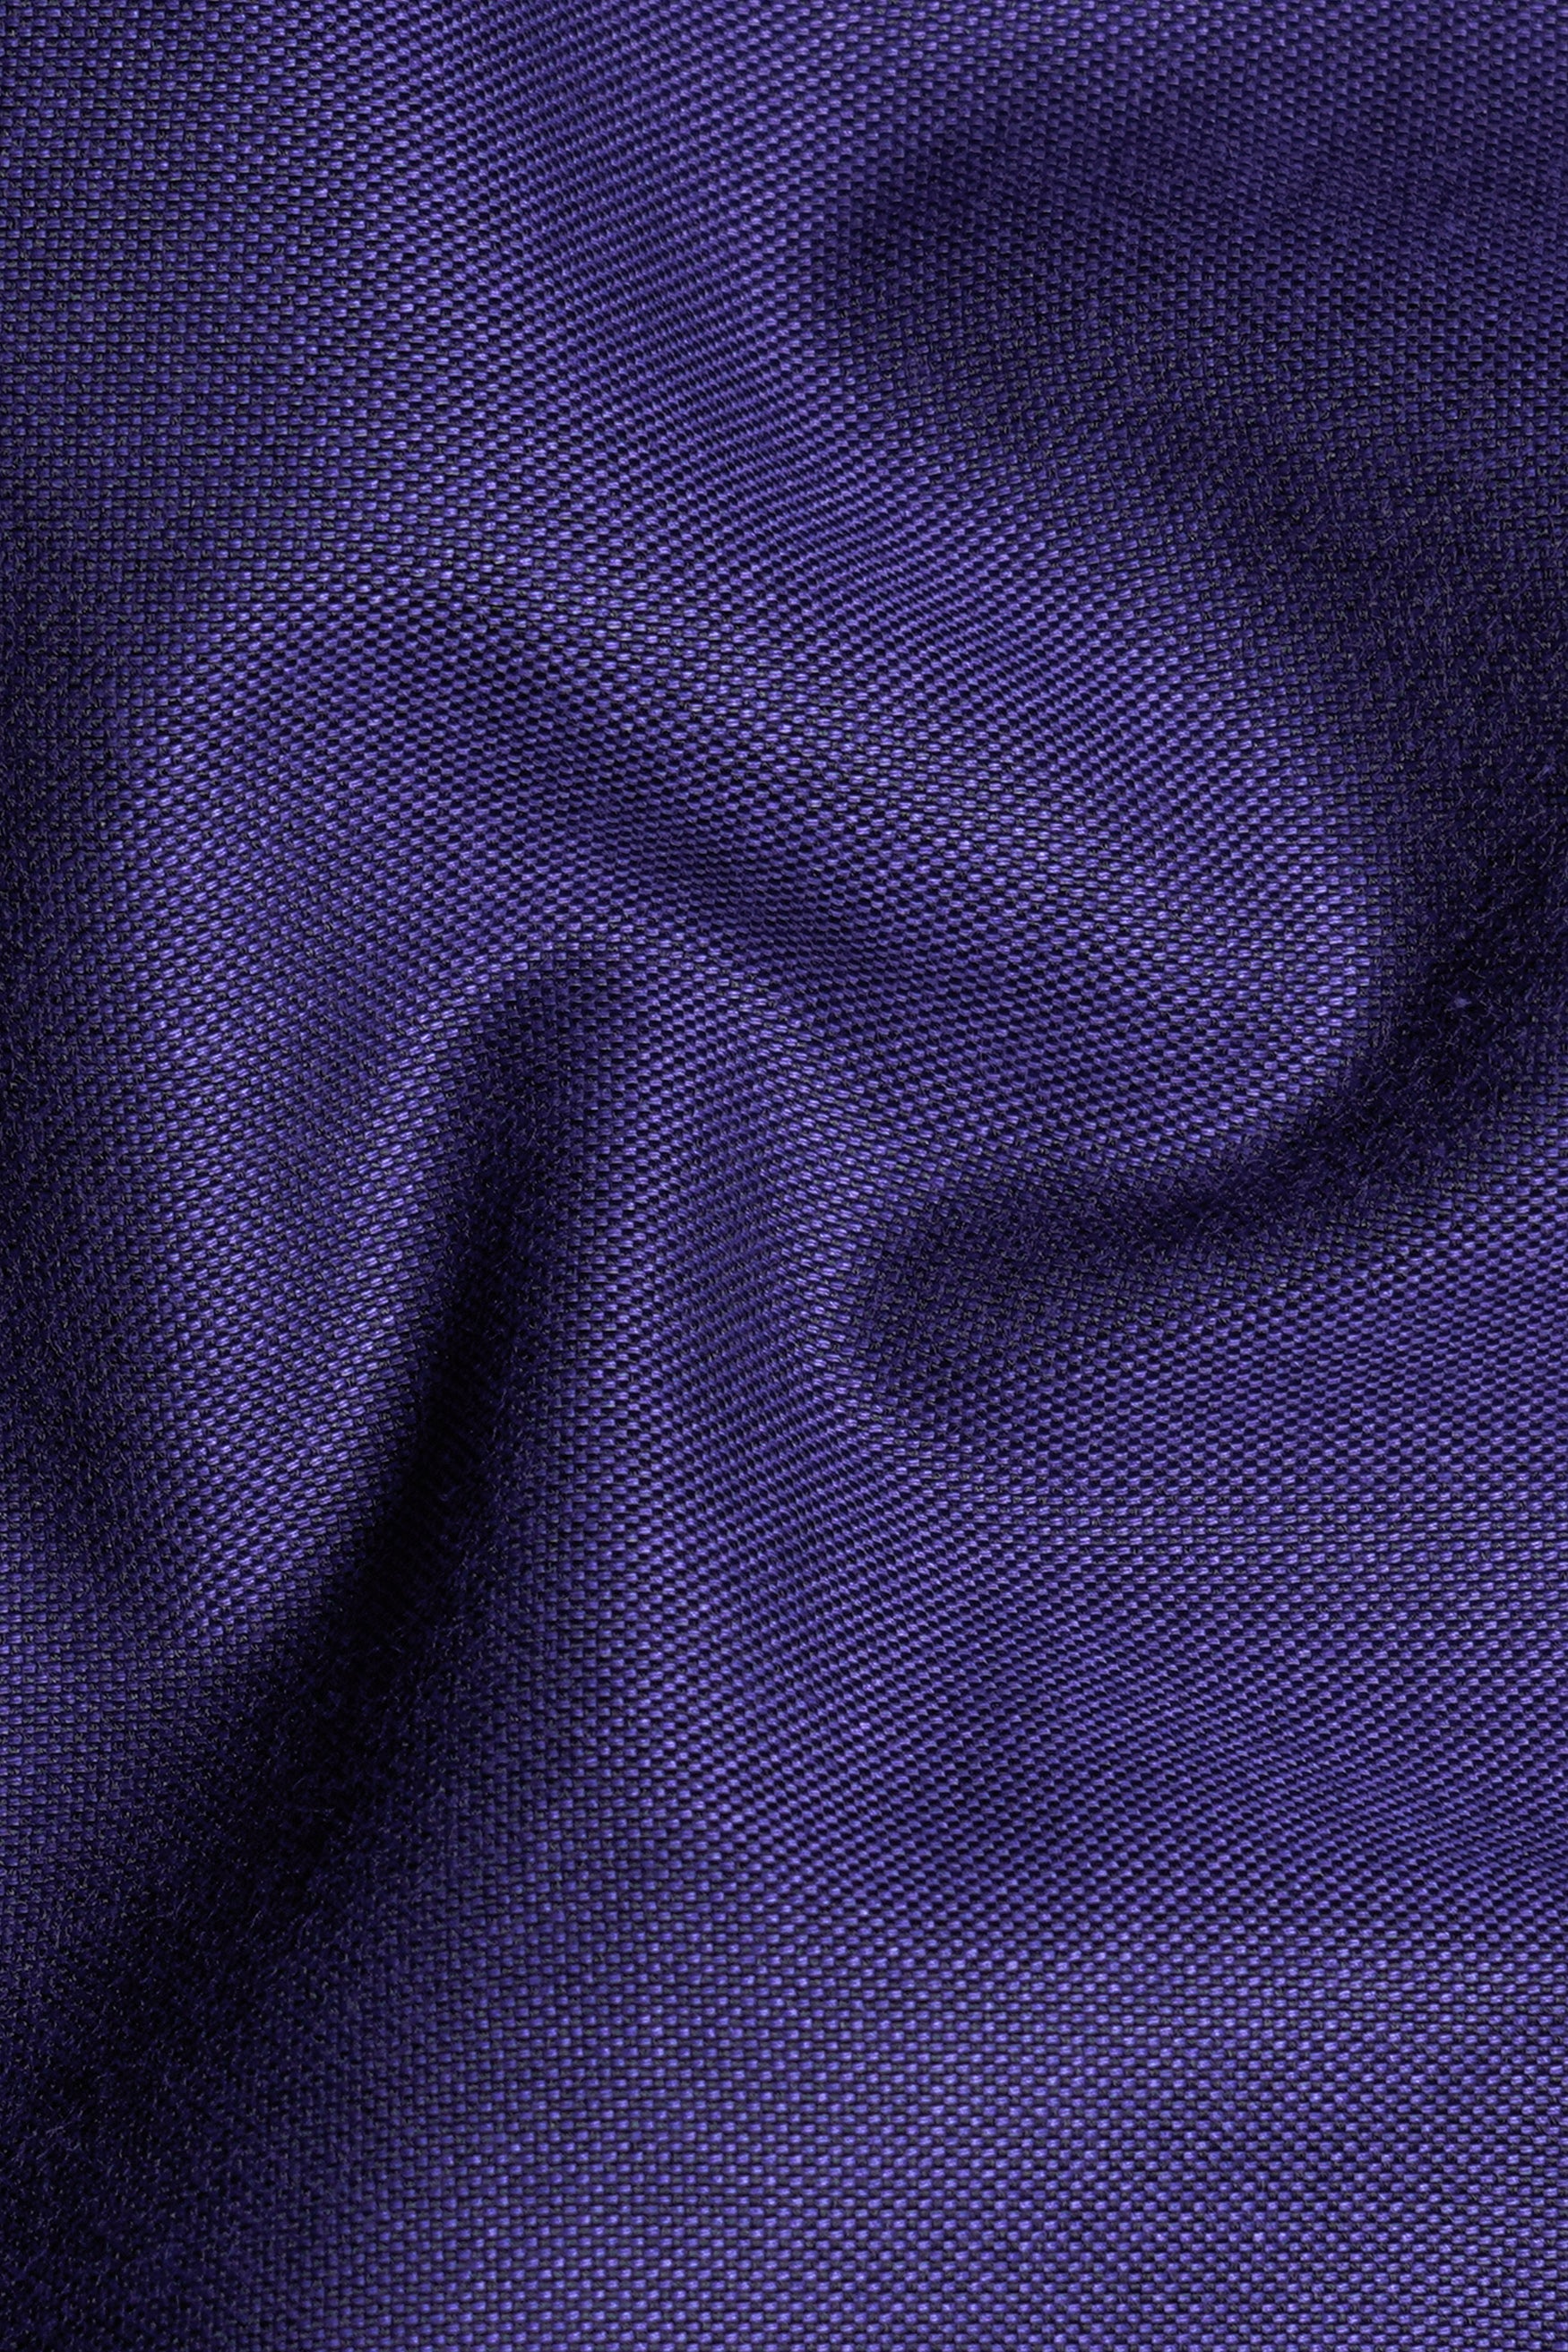 Jacarta Purple Royal Oxford Button Down Shirt